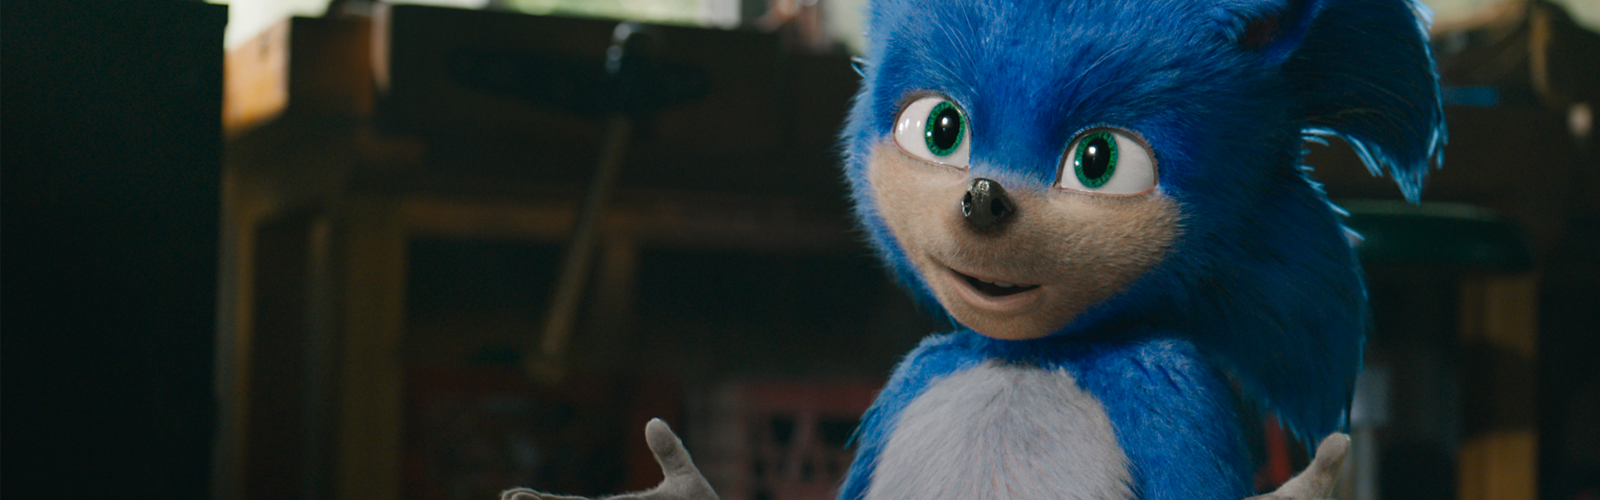 Filme sobre Sonic ganha trailer e cartaz